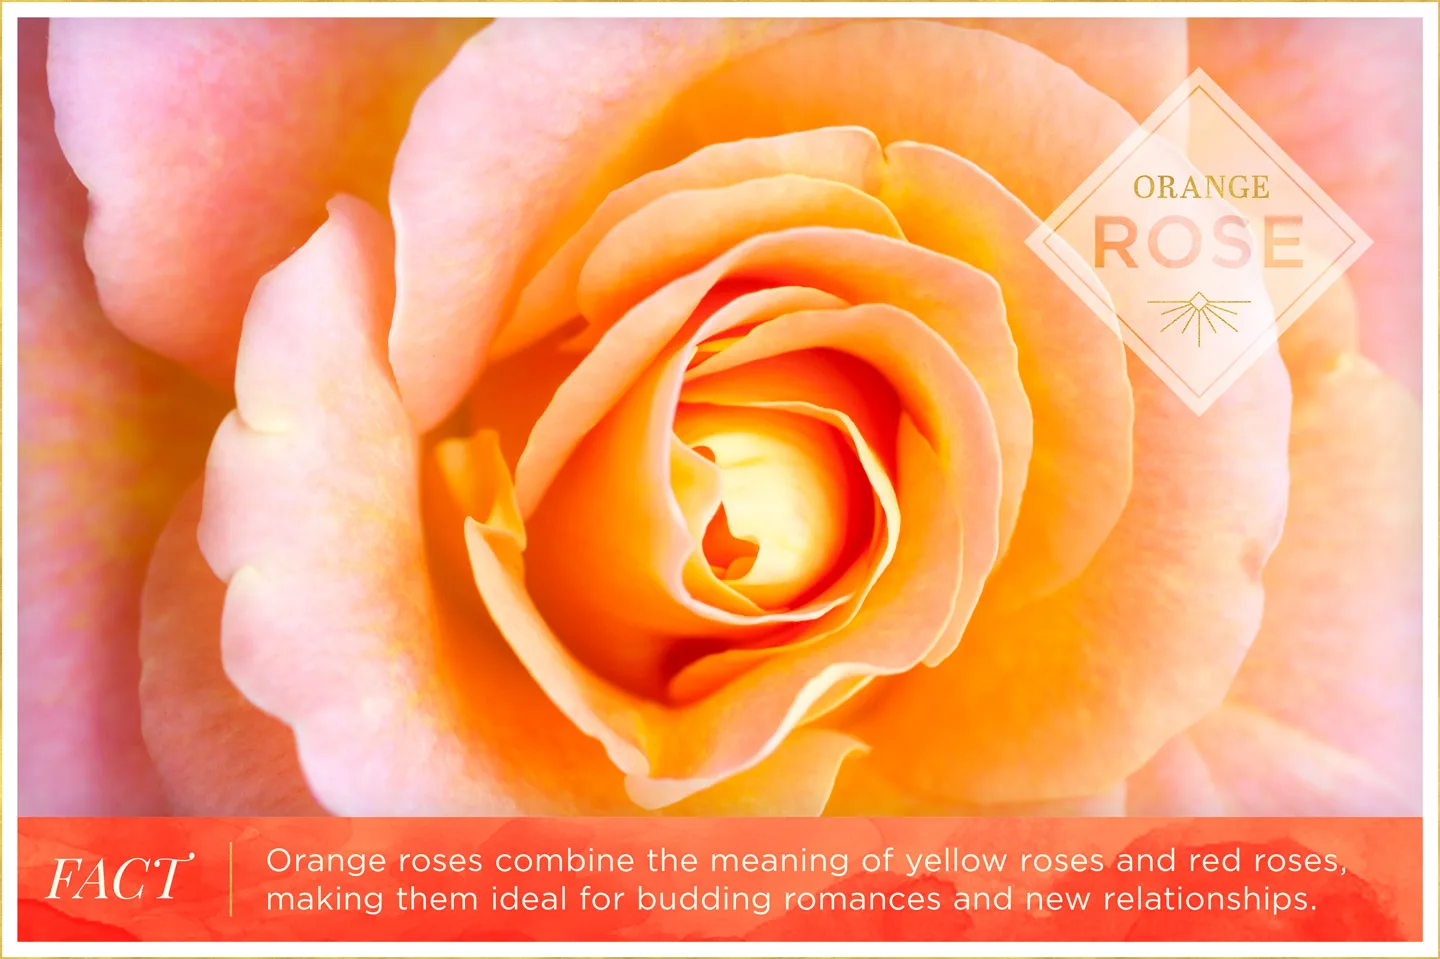 orange-rose-meaning